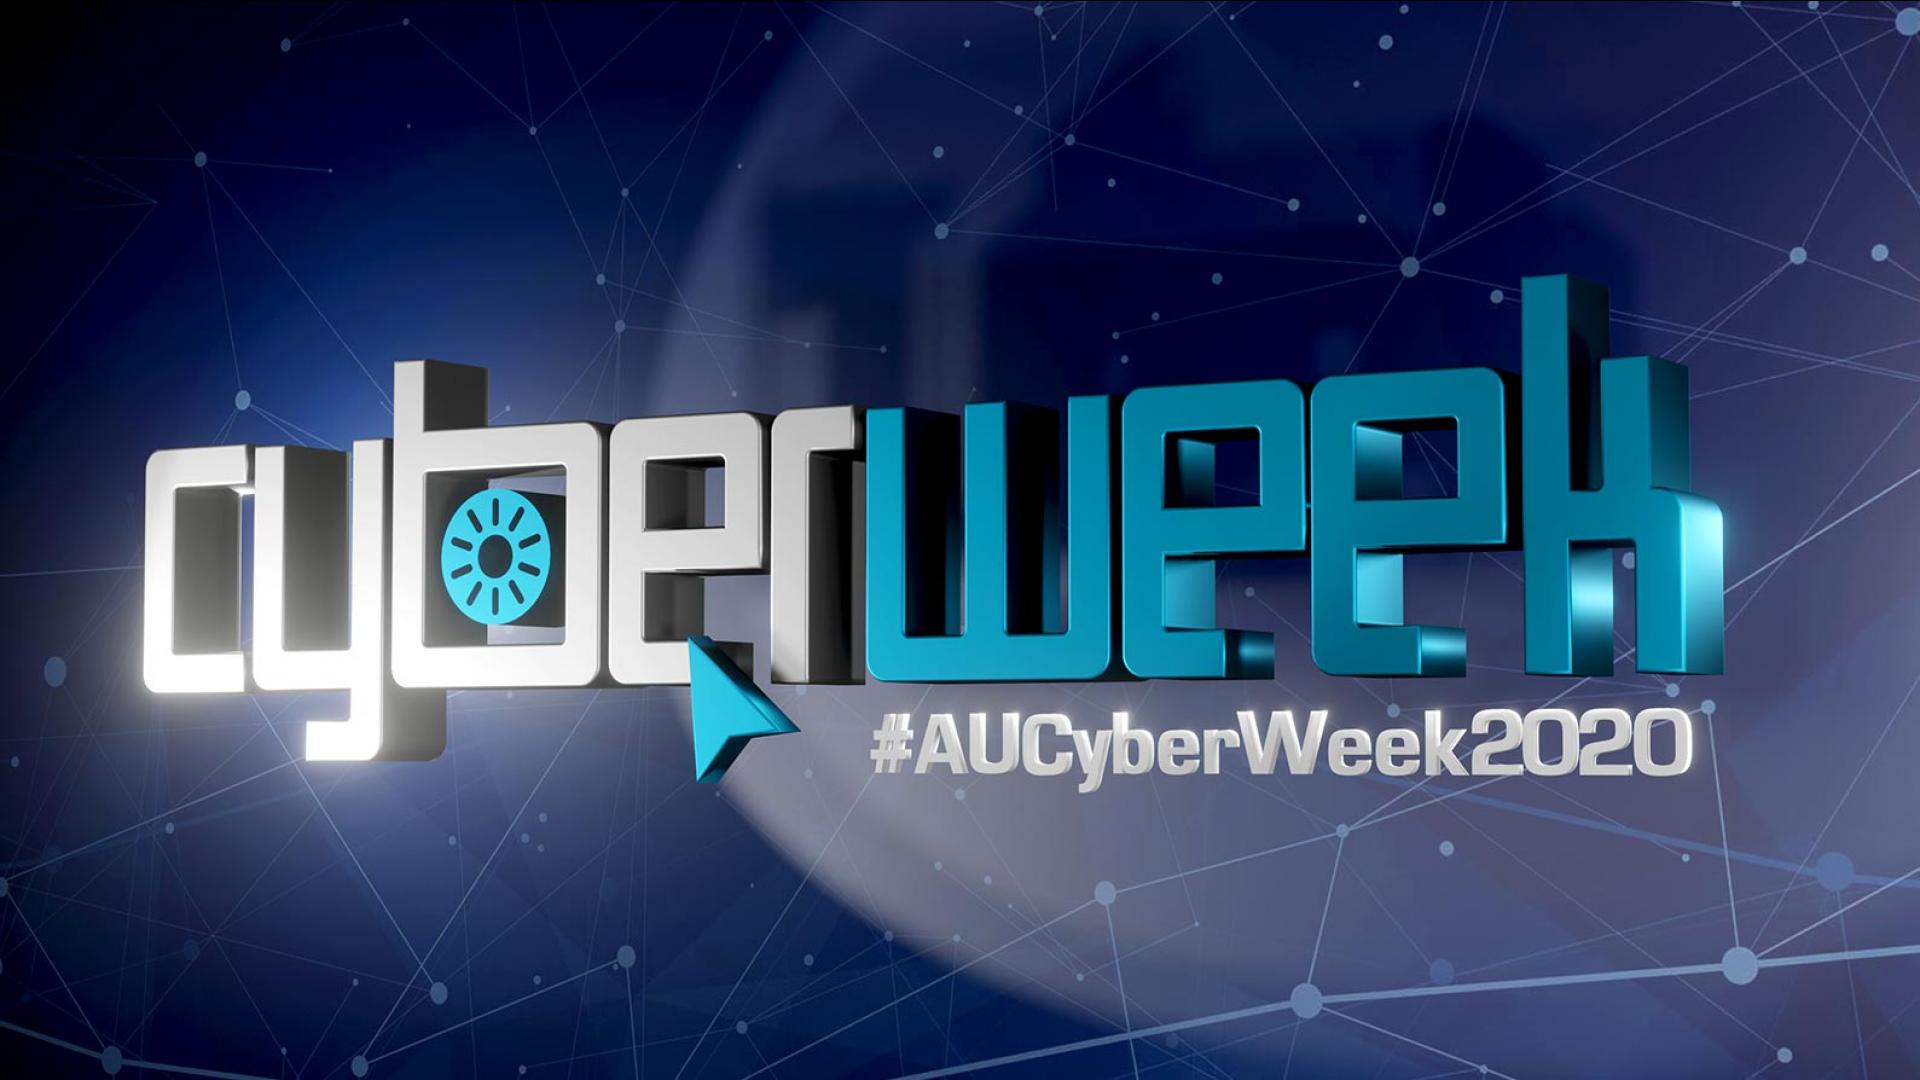 Australian cyber week 2020